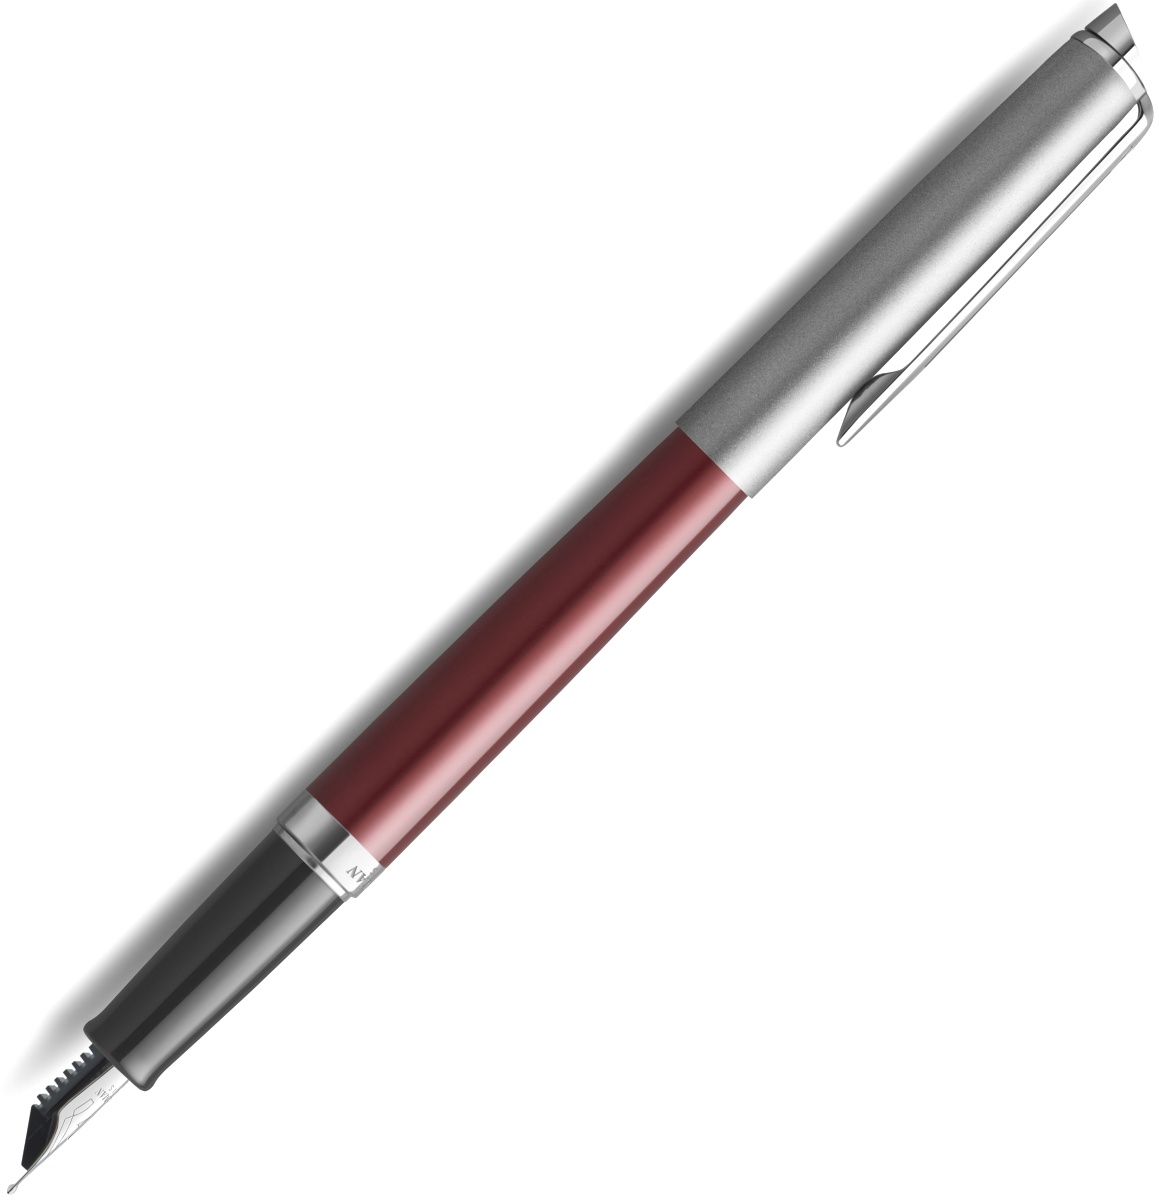  Ручка перьевая Waterman Hemisphere, Matte SS Red CT (Перо F), фото 2